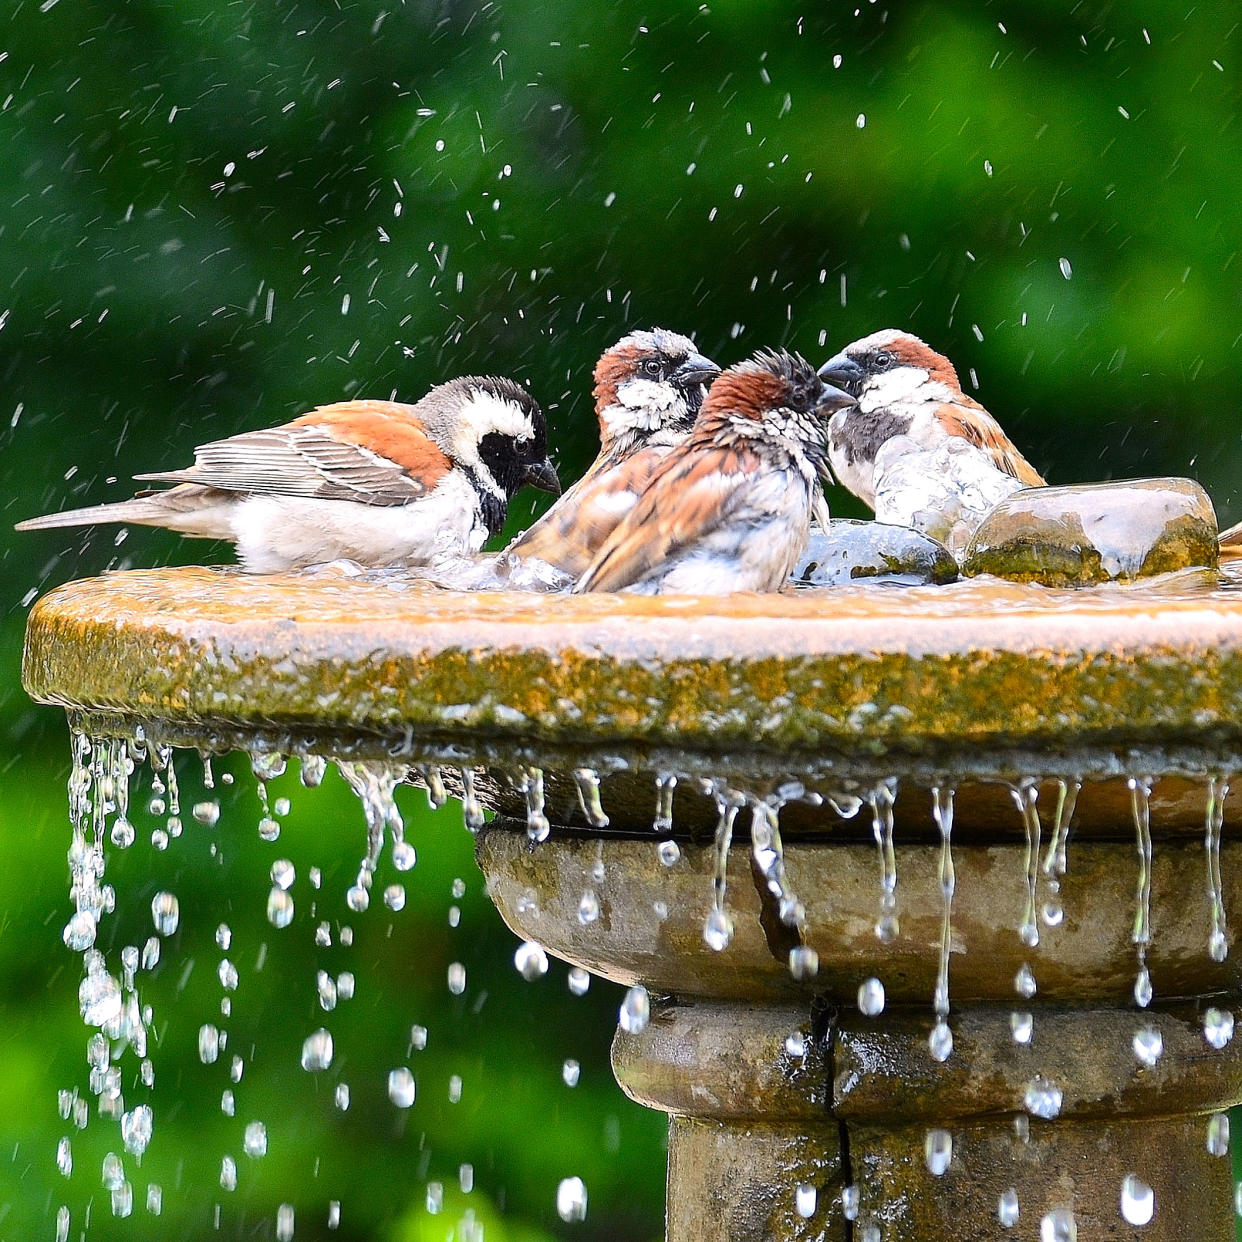  Garden birds enjoying a well maintained bird bath. 